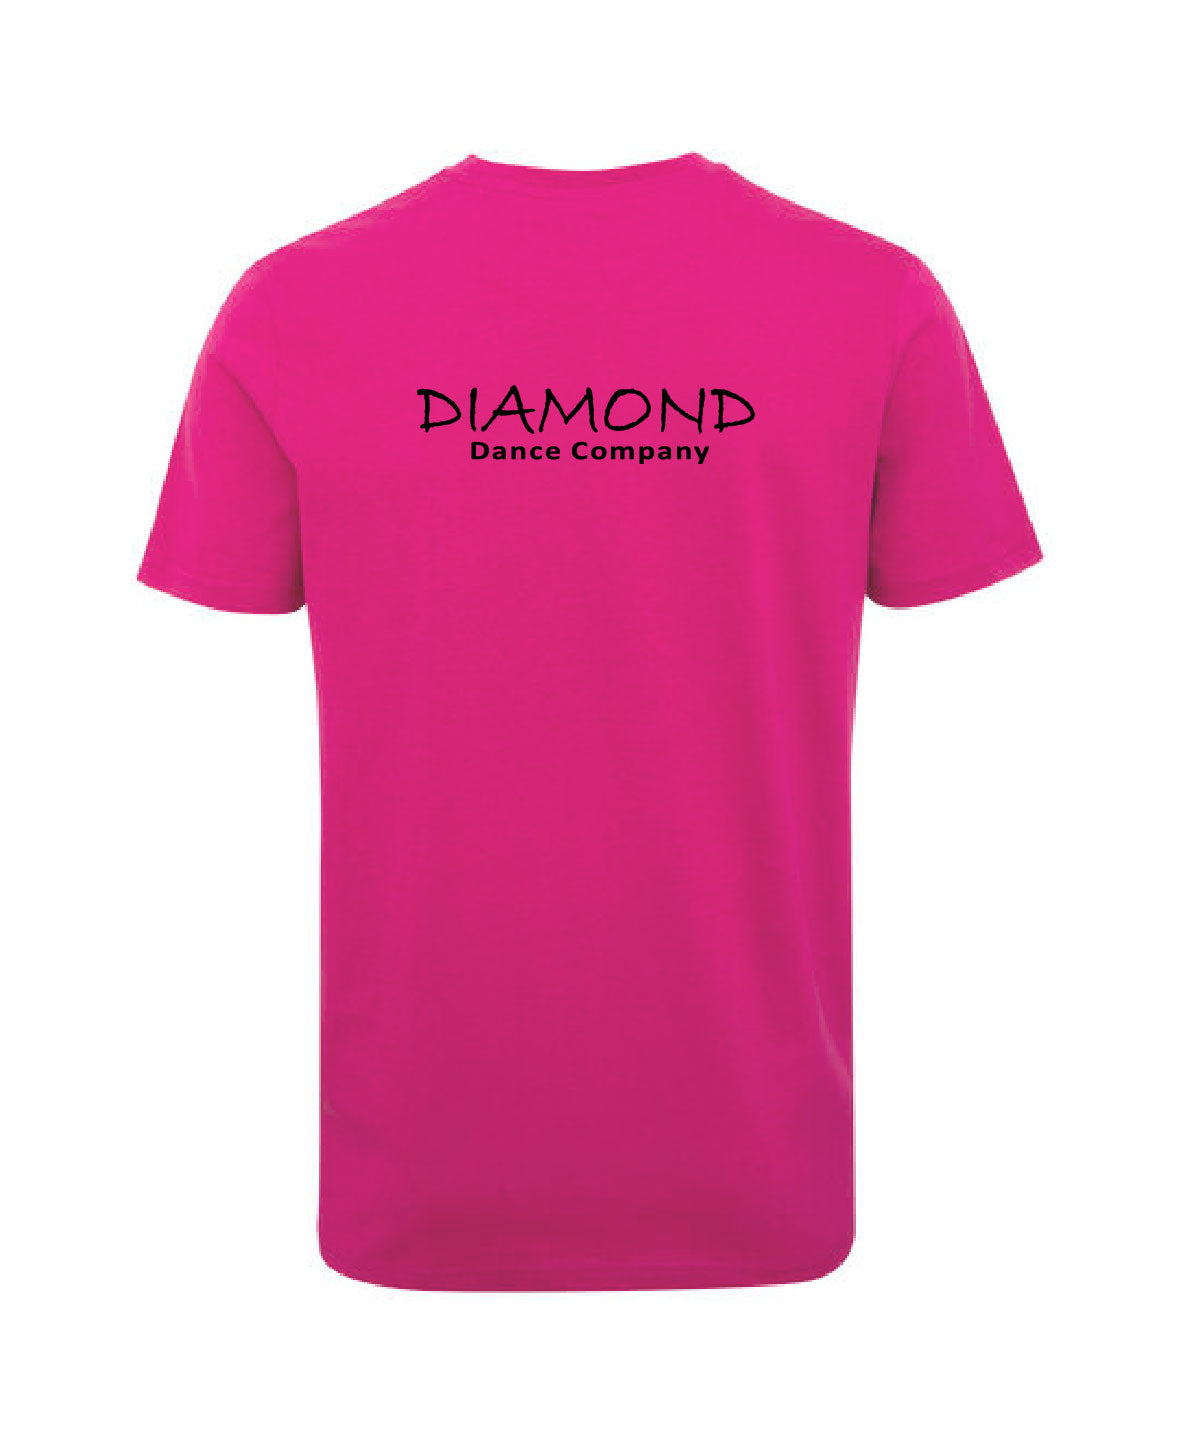 Softstyle™ adult t-shirt - Diamond Dance